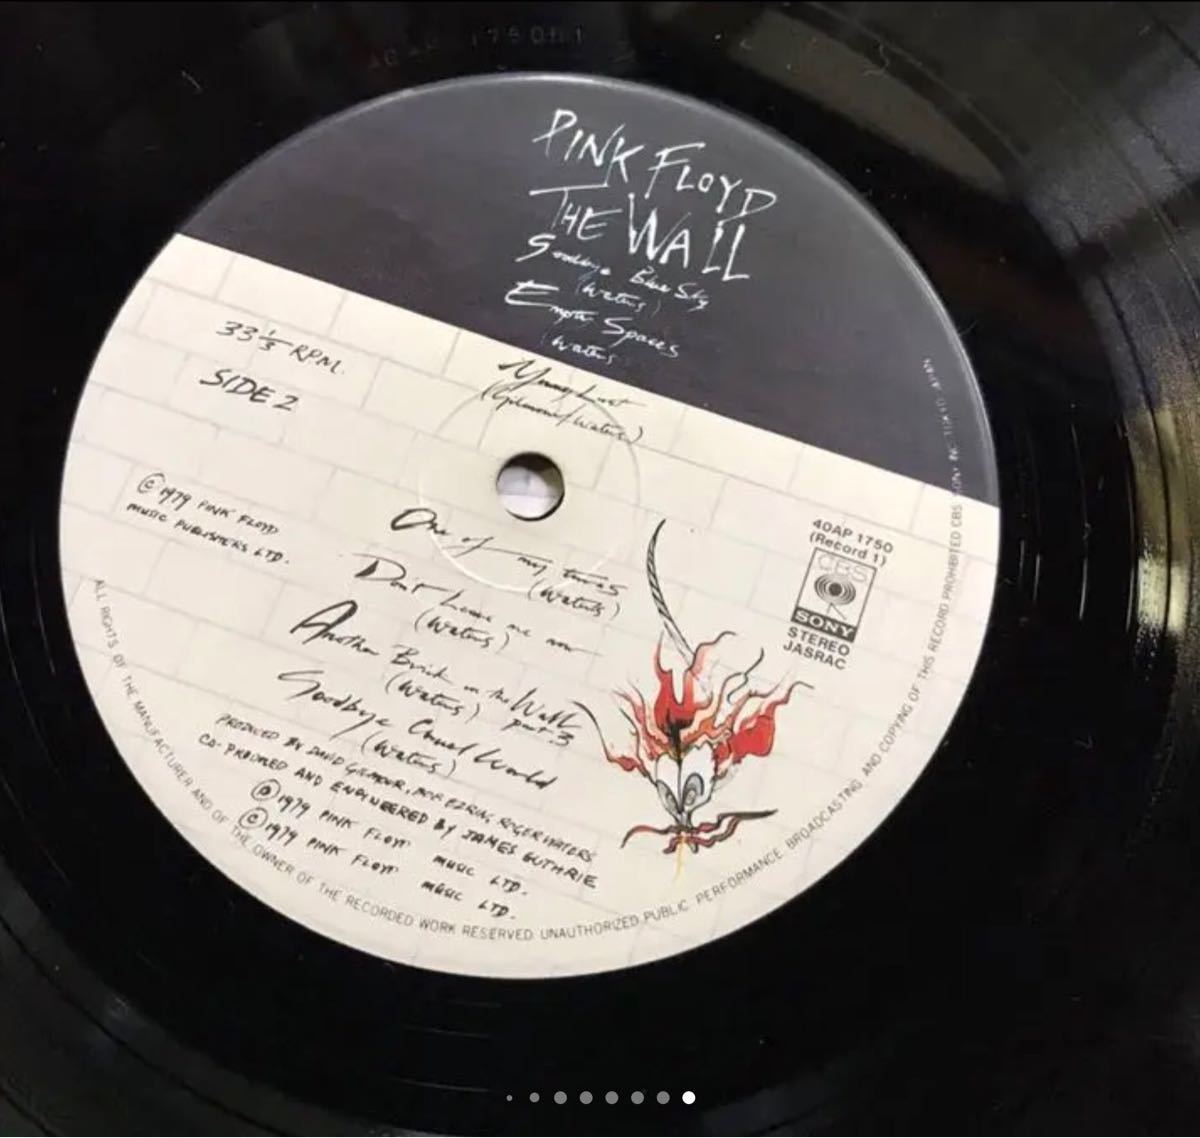 THE WALL ザ・ウォール　ピンクフロイド 日本盤レコード